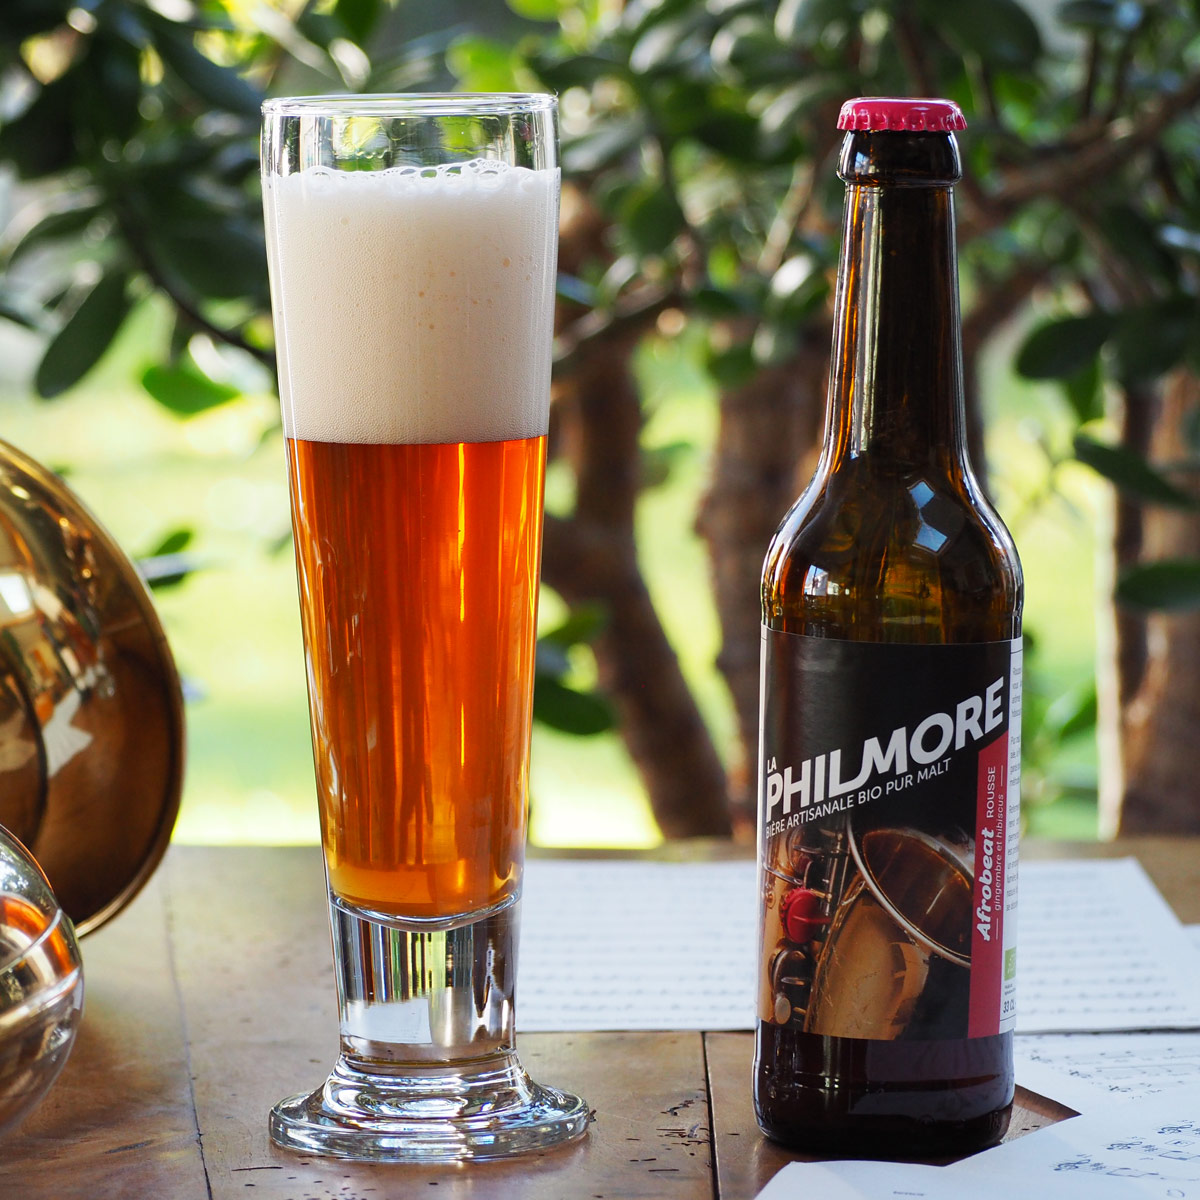 La Philmore Afrobeat – bière artisanale bio pur malt